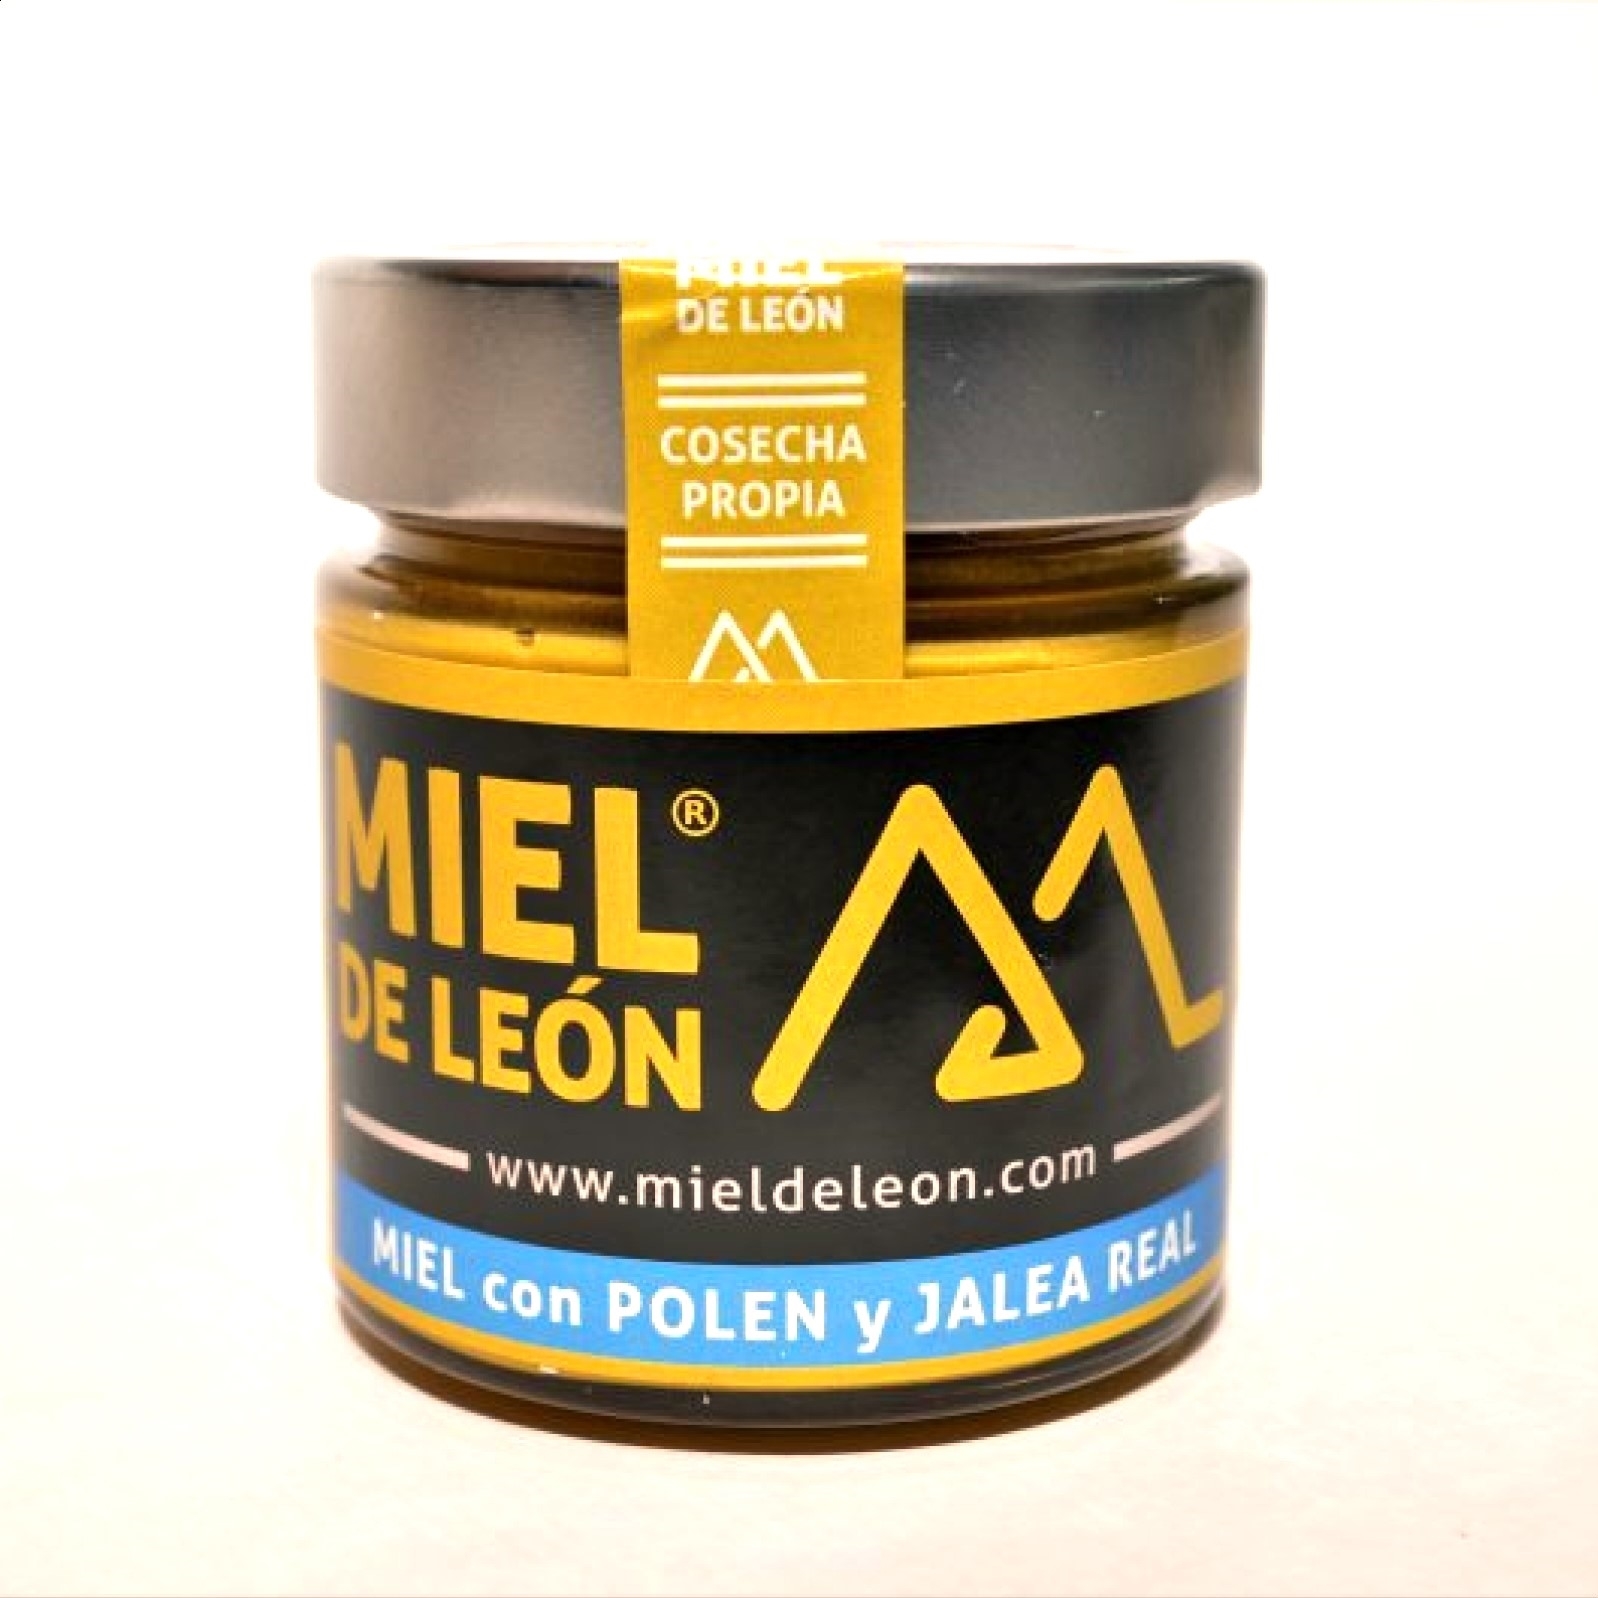 Miel de León - Miel con polen y jalea real, 4uds de 280g